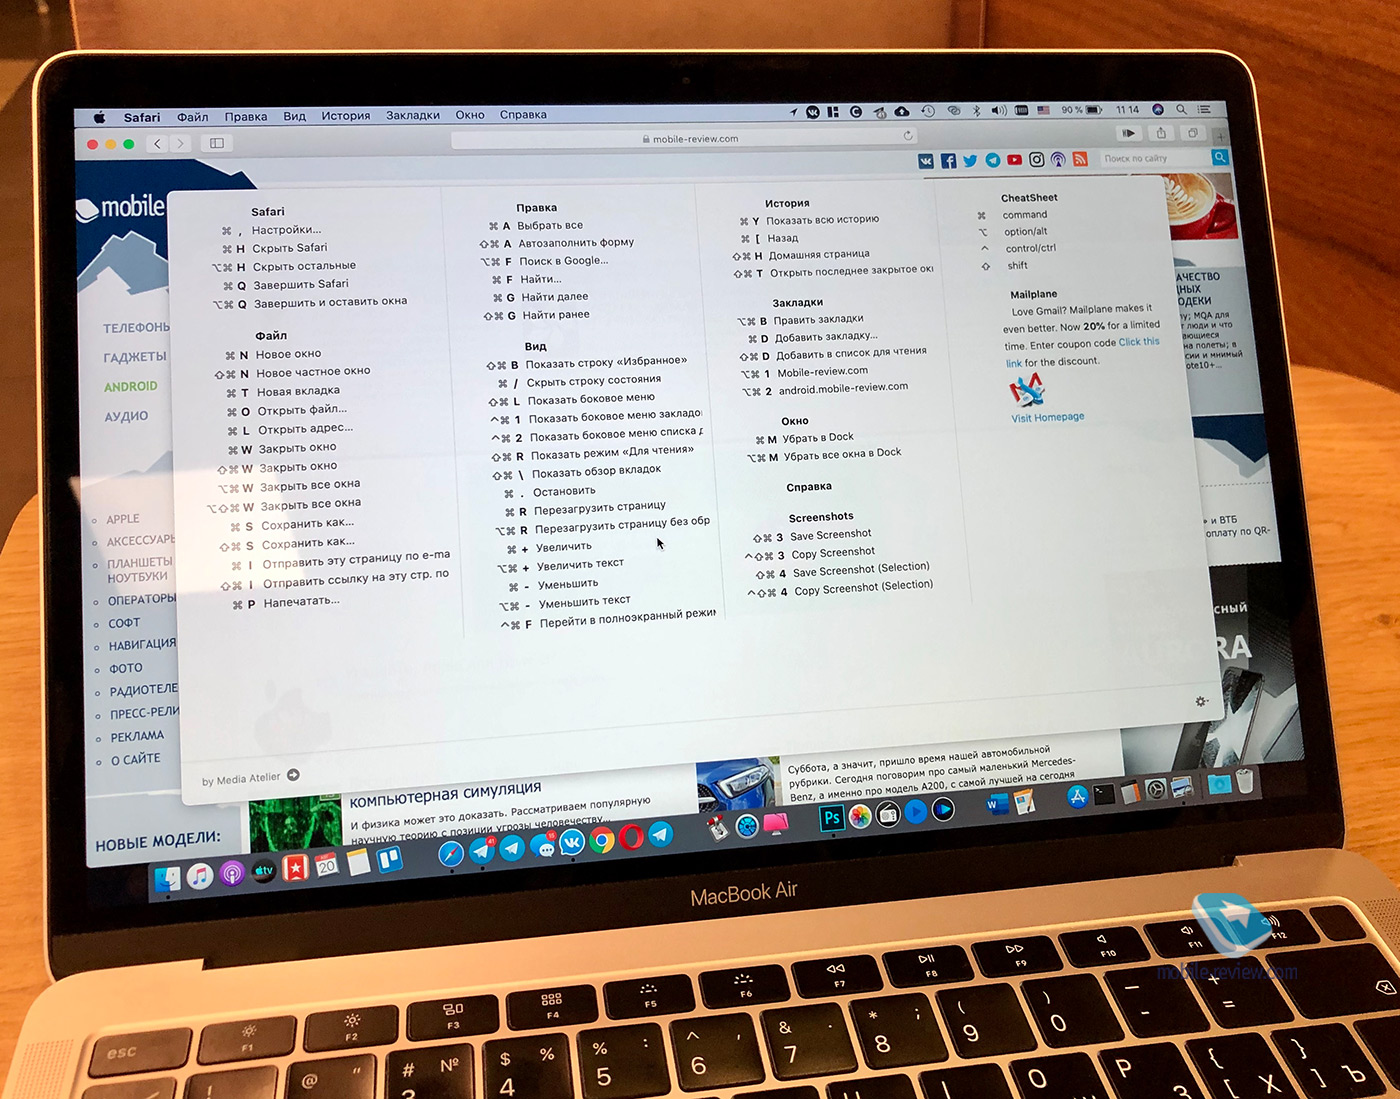 Кодекс маковода: 10 советов начинающим пользователям MacBook